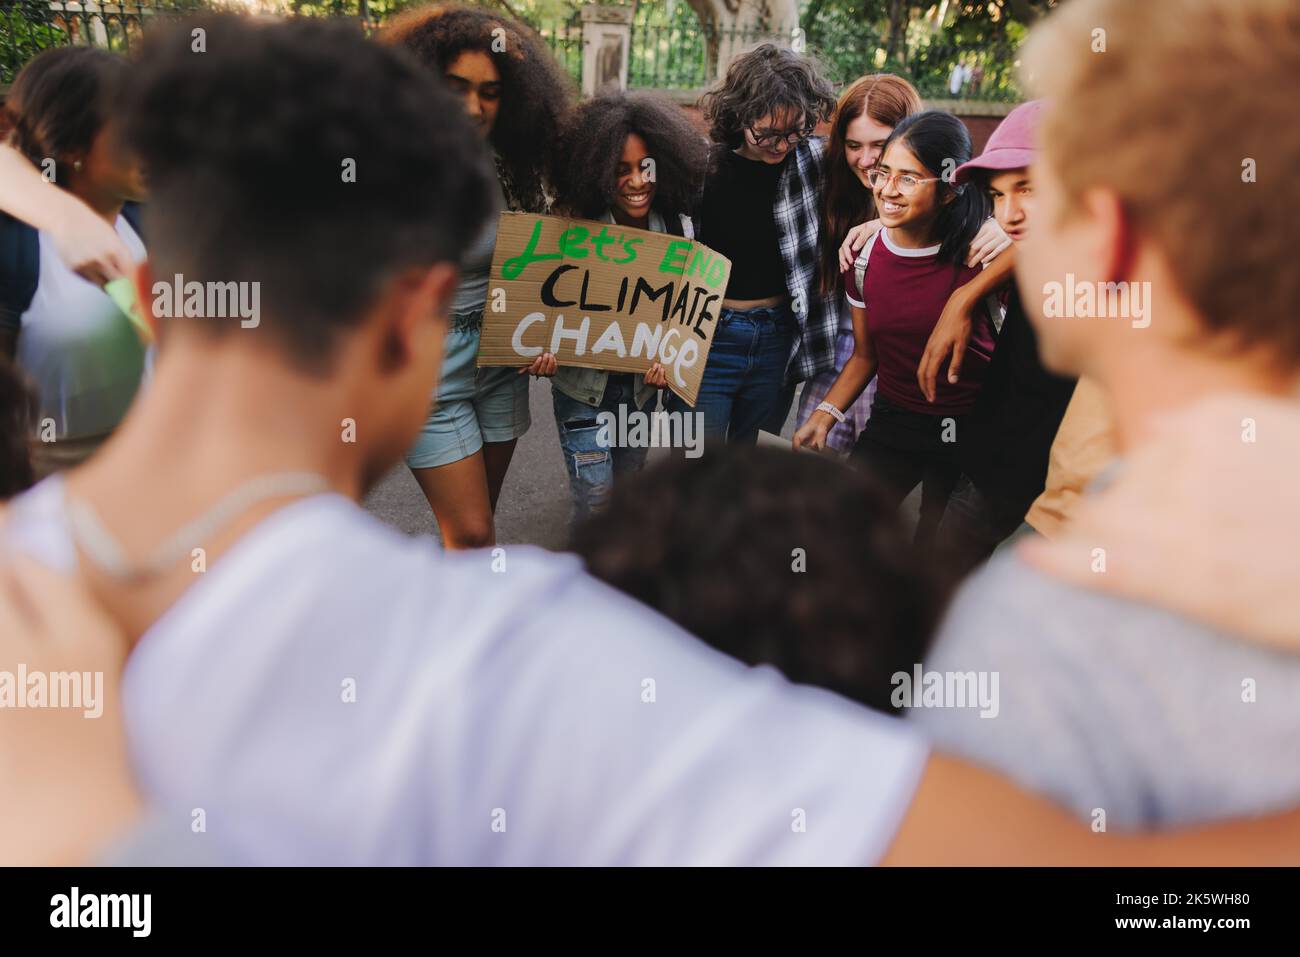 Groupe de jeunes activistes multiculturels réunis dans un cercle lors d'une manifestation sur le changement climatique. Les jeunes de la génération Z rejoignent la cli mondiale Banque D'Images